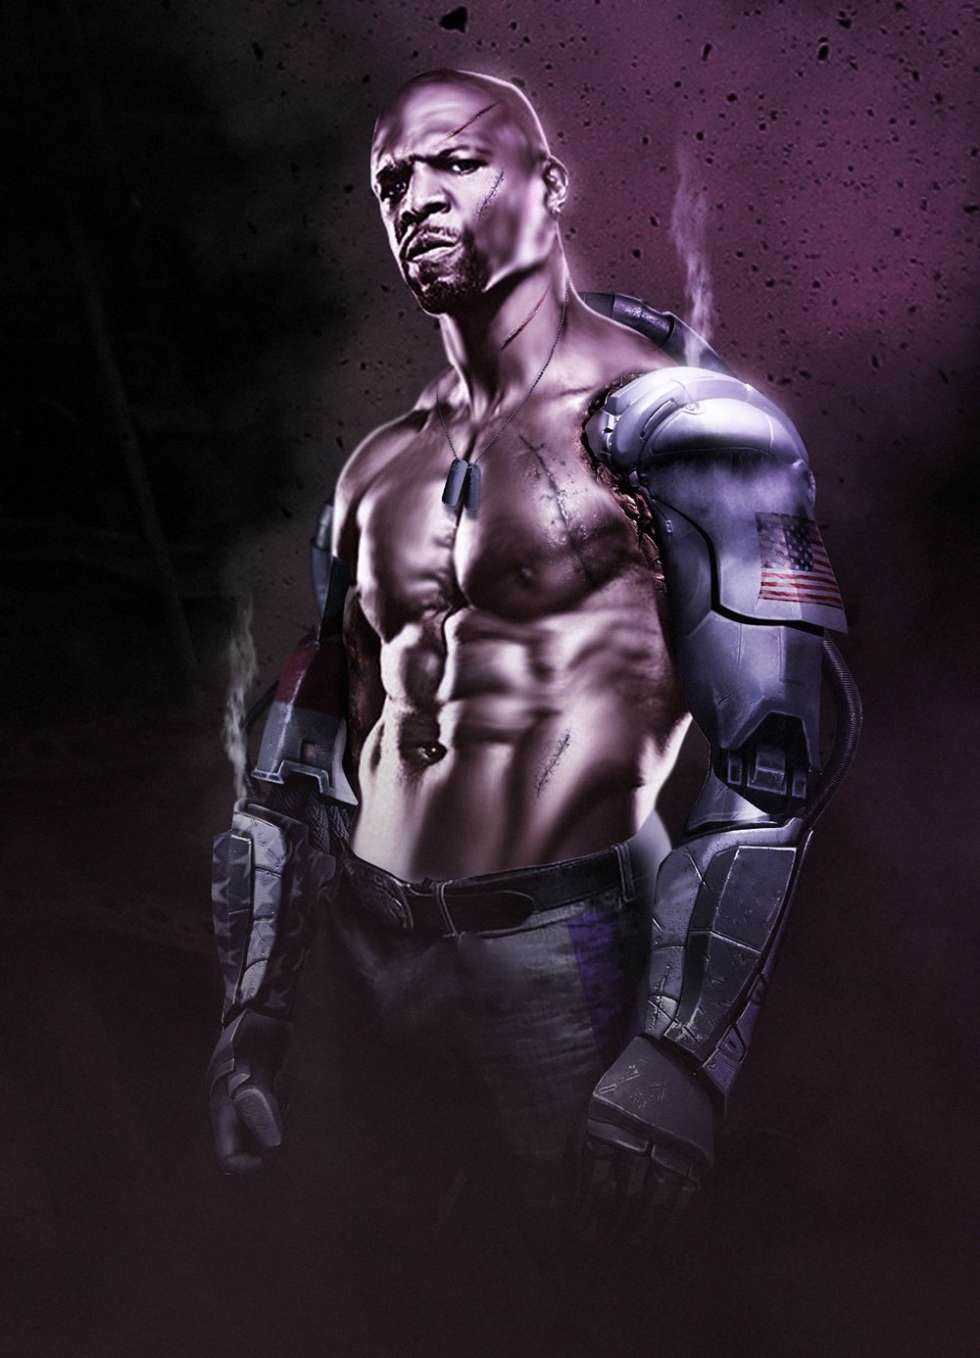 Терри Крюс крайне заинтересован ролью Джакса в Mortal Kombat